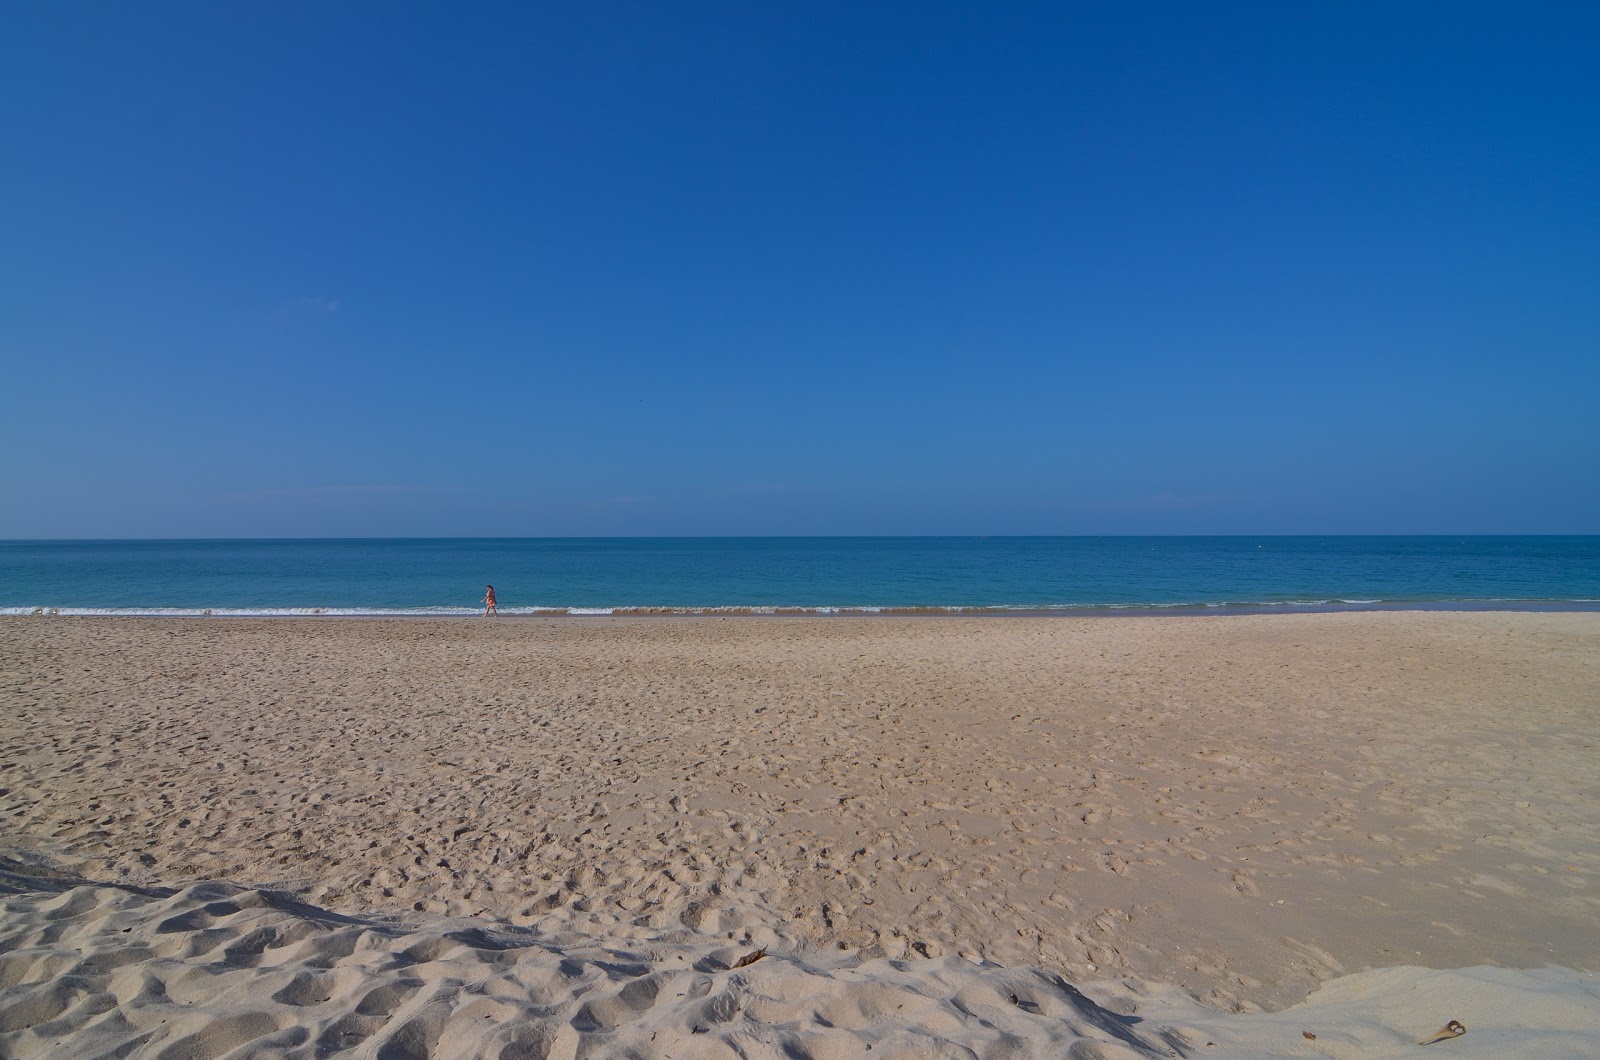 Foto de Pra-Ae Beach - lugar popular entre os apreciadores de relaxamento